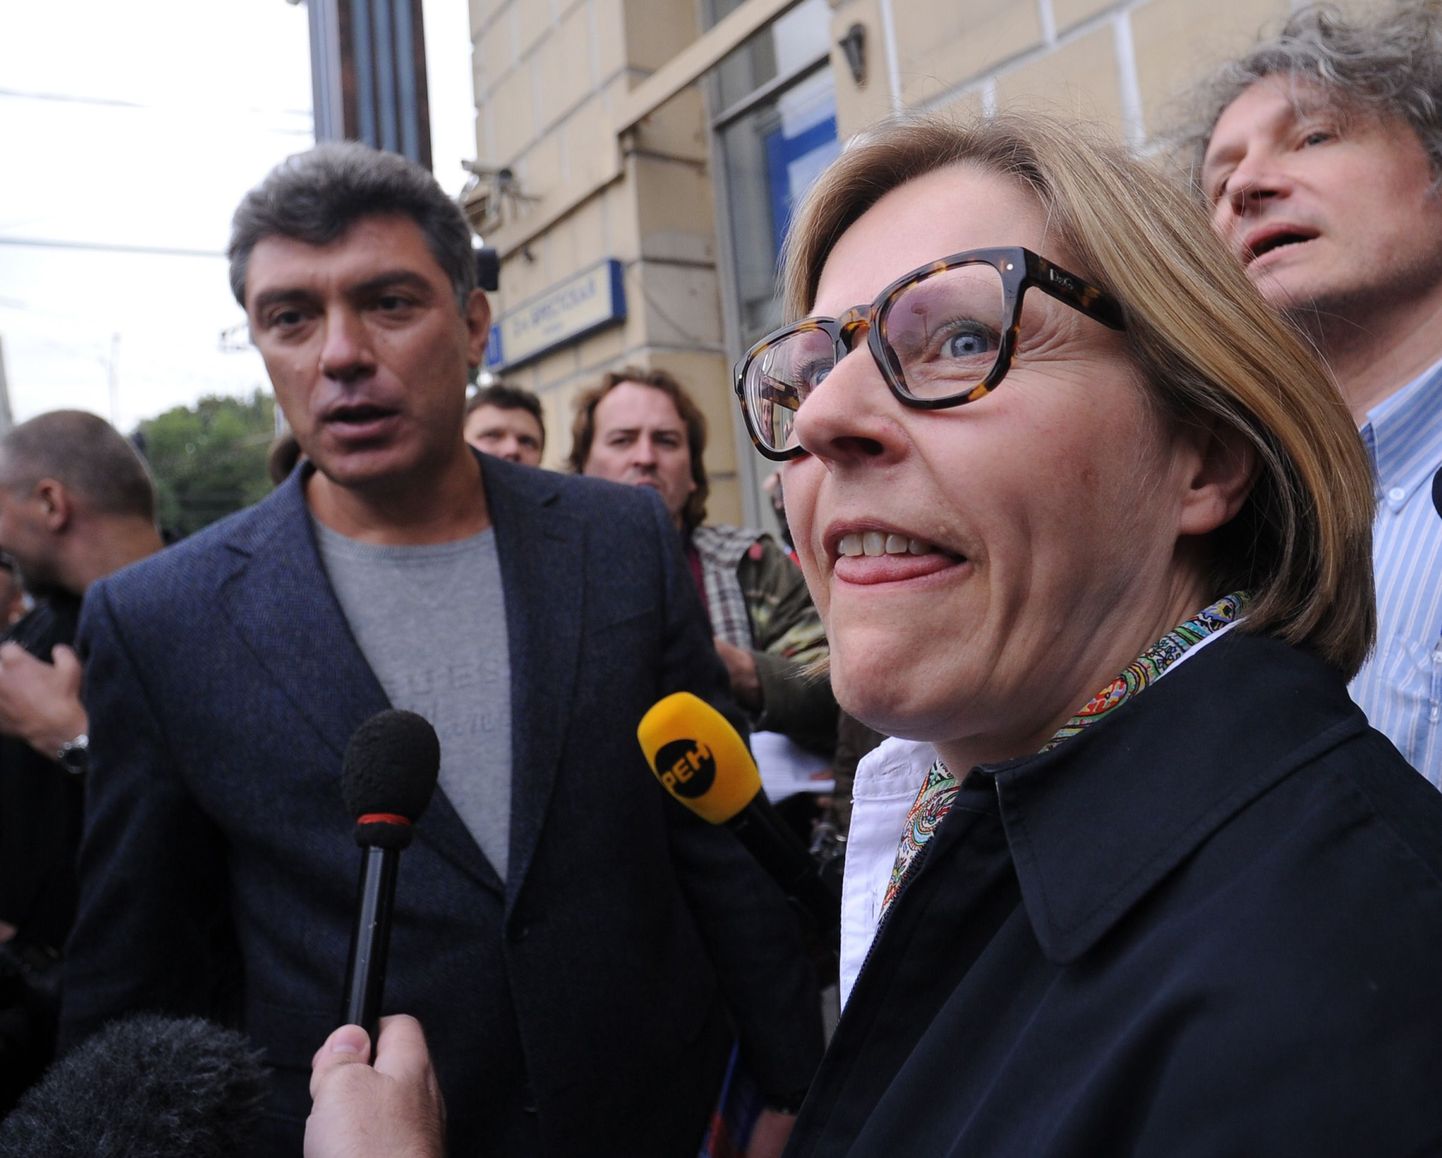 Soome praegune arengukoostöö minister Heidi Hautala. Taga vasakul paistab Vene poliitik Boriss Nemtsov.